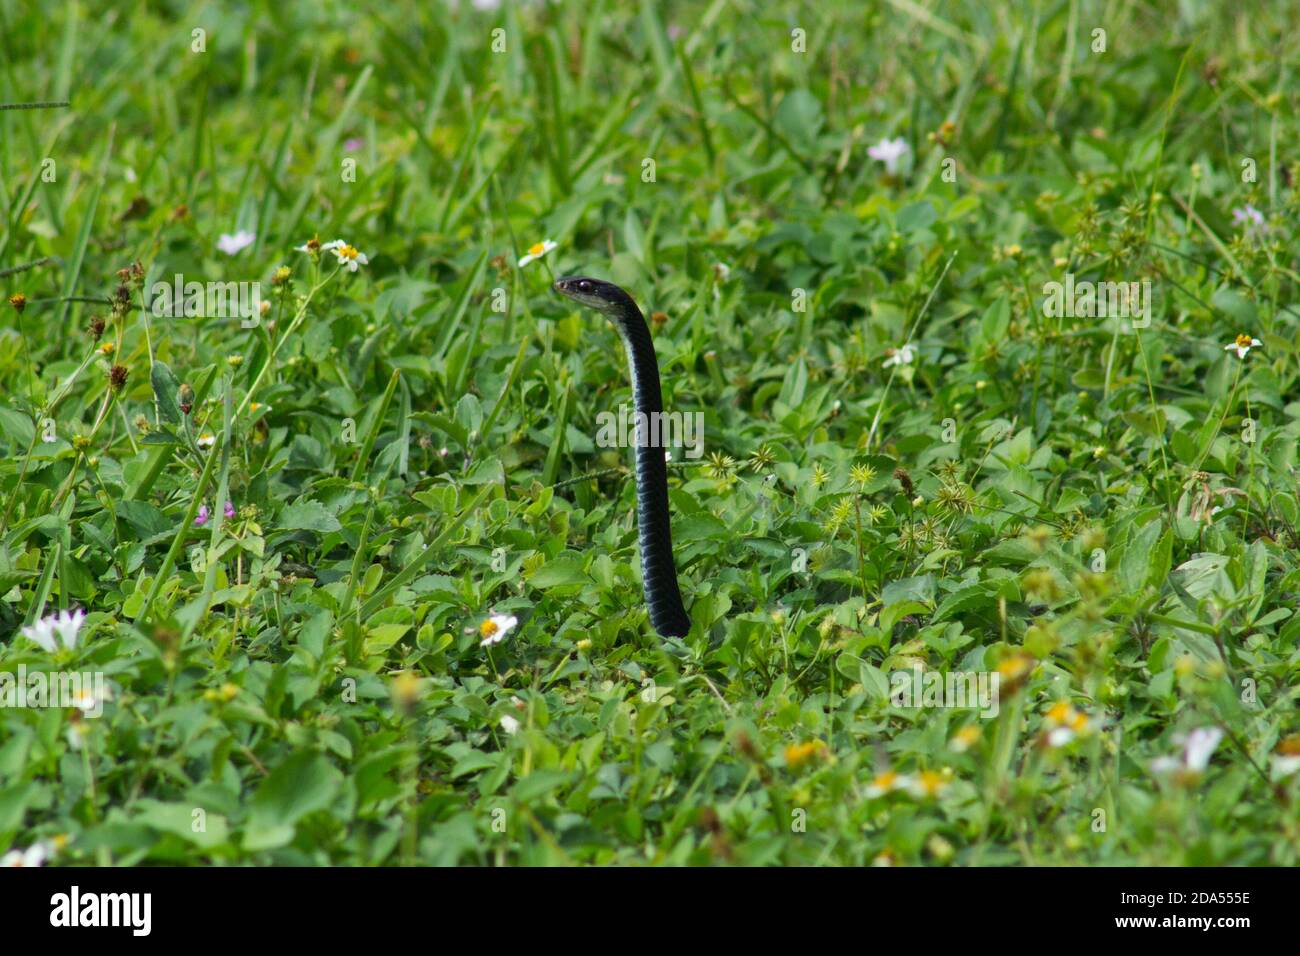 Una serpiente negra hace estallar su cabeza fuera de la hierba Foto de stock